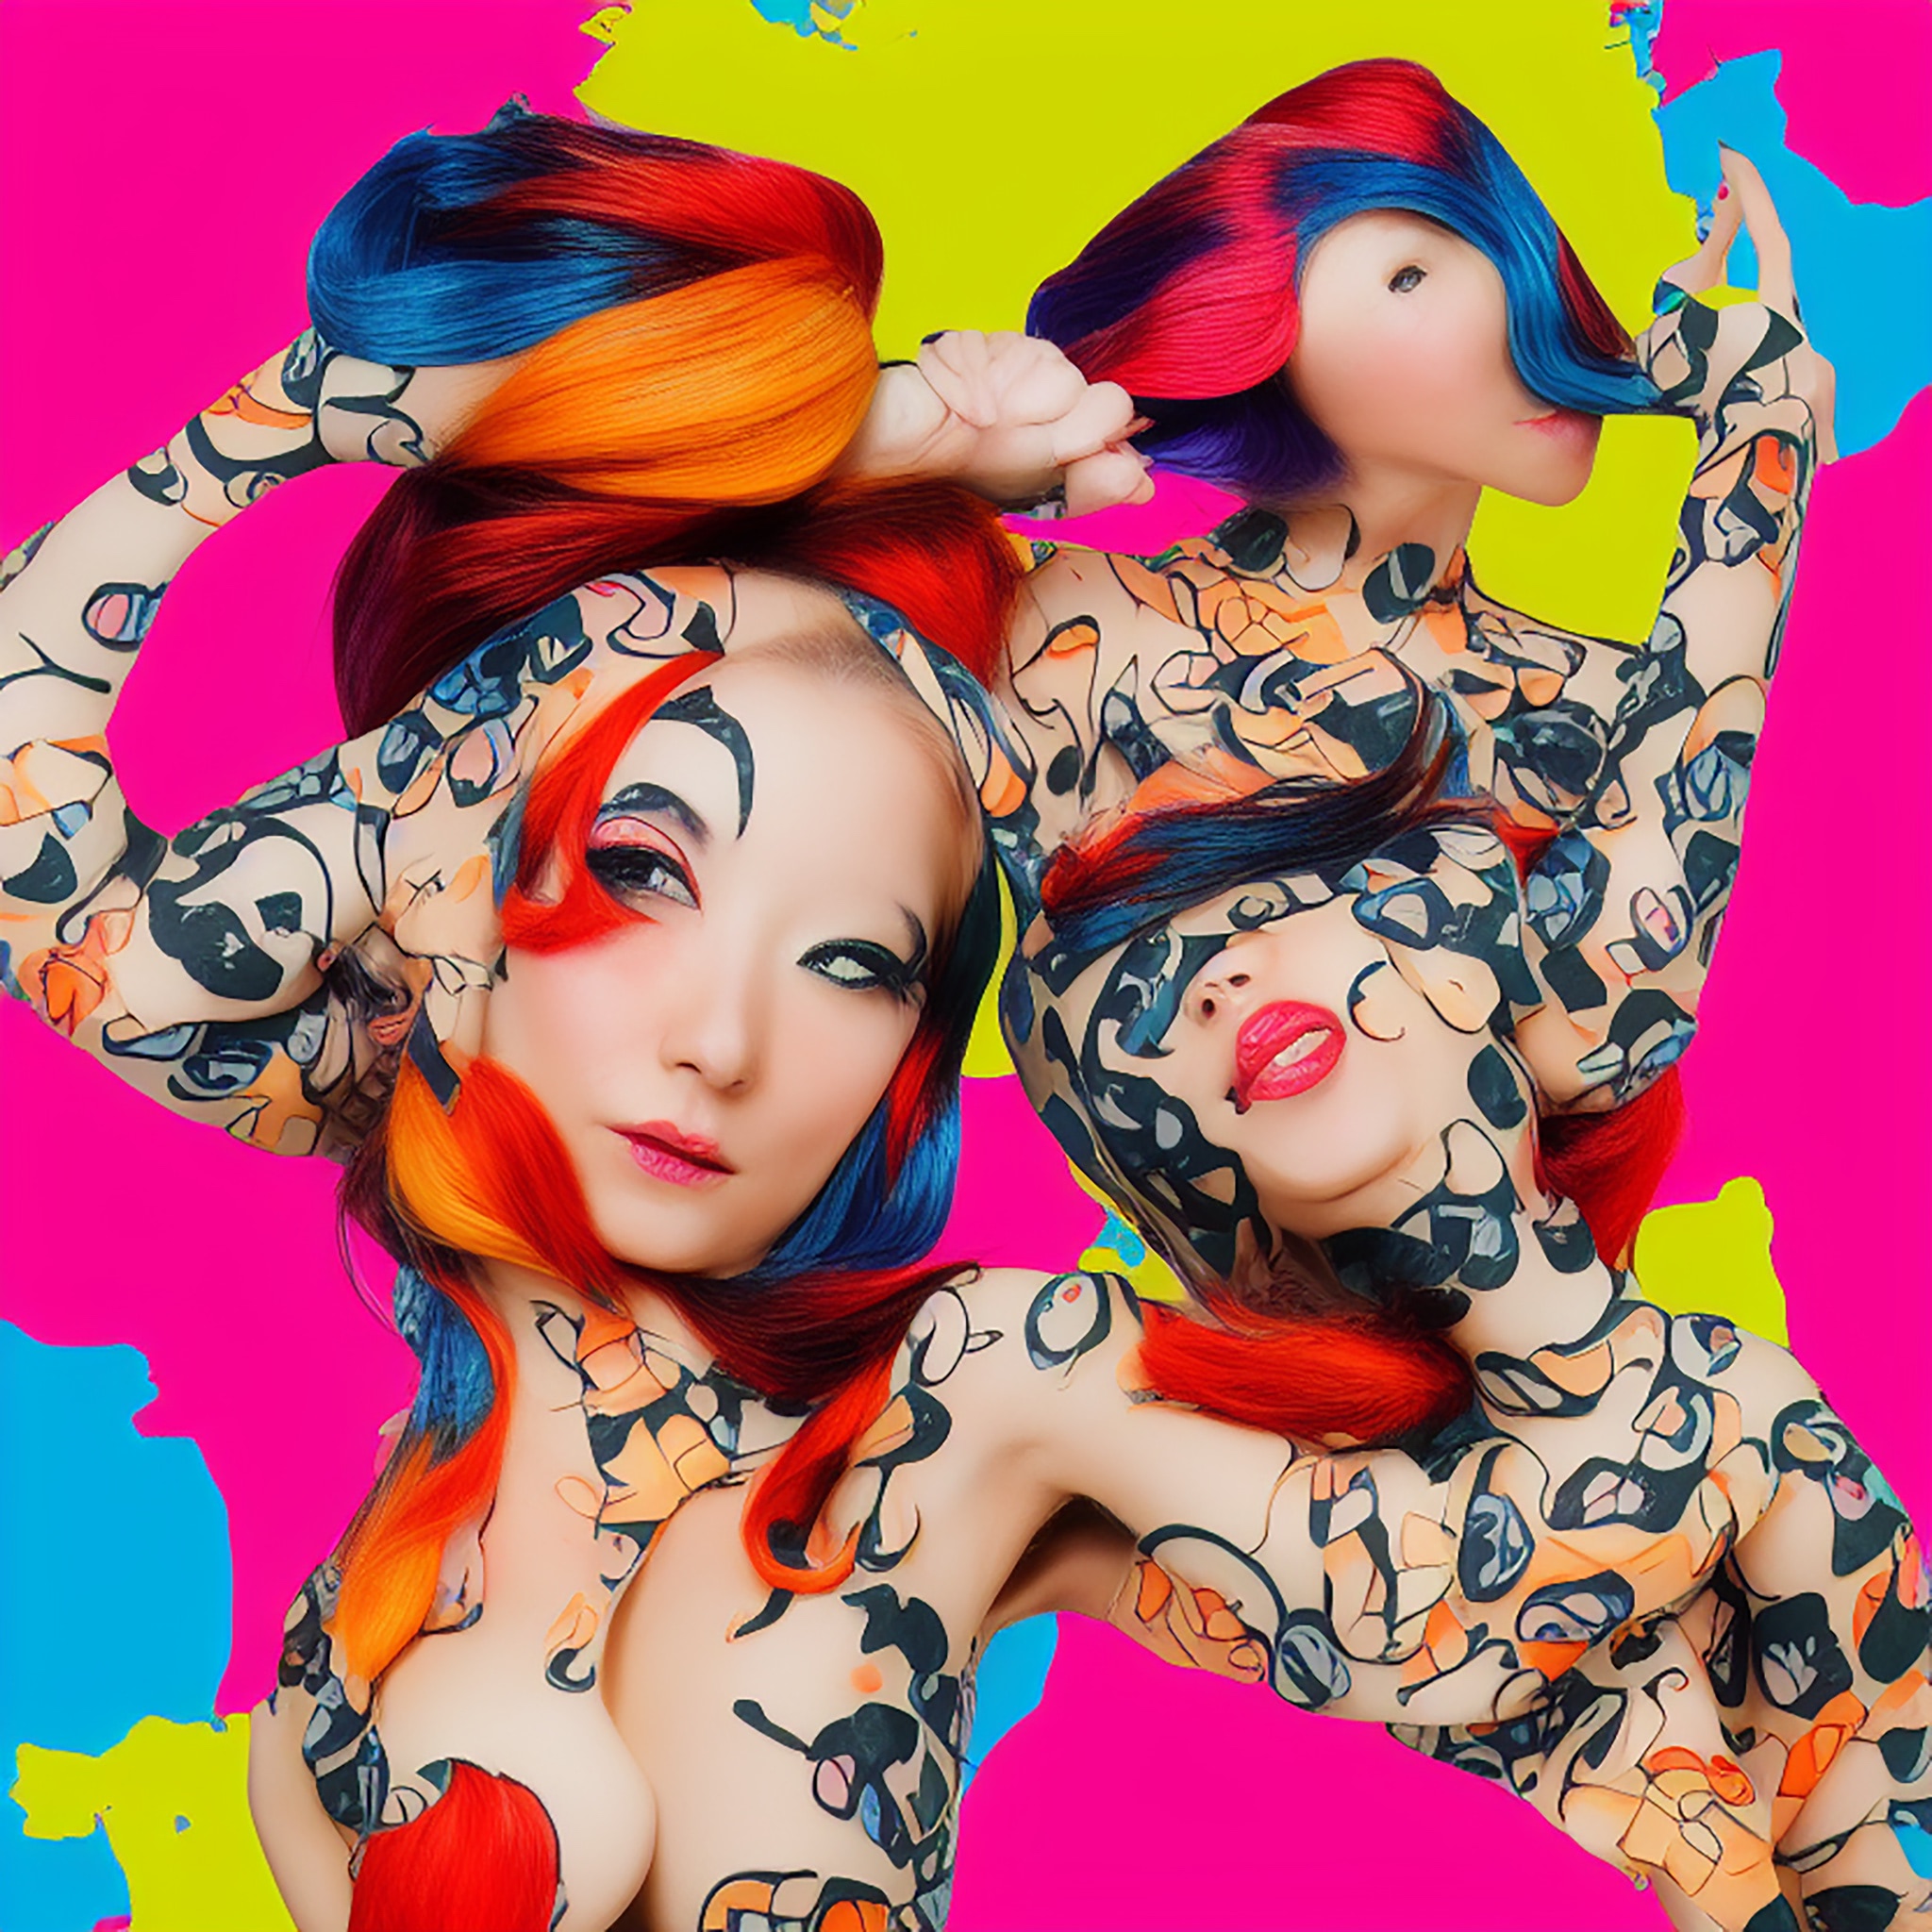 model-dress-sushi-colorful-pop-art